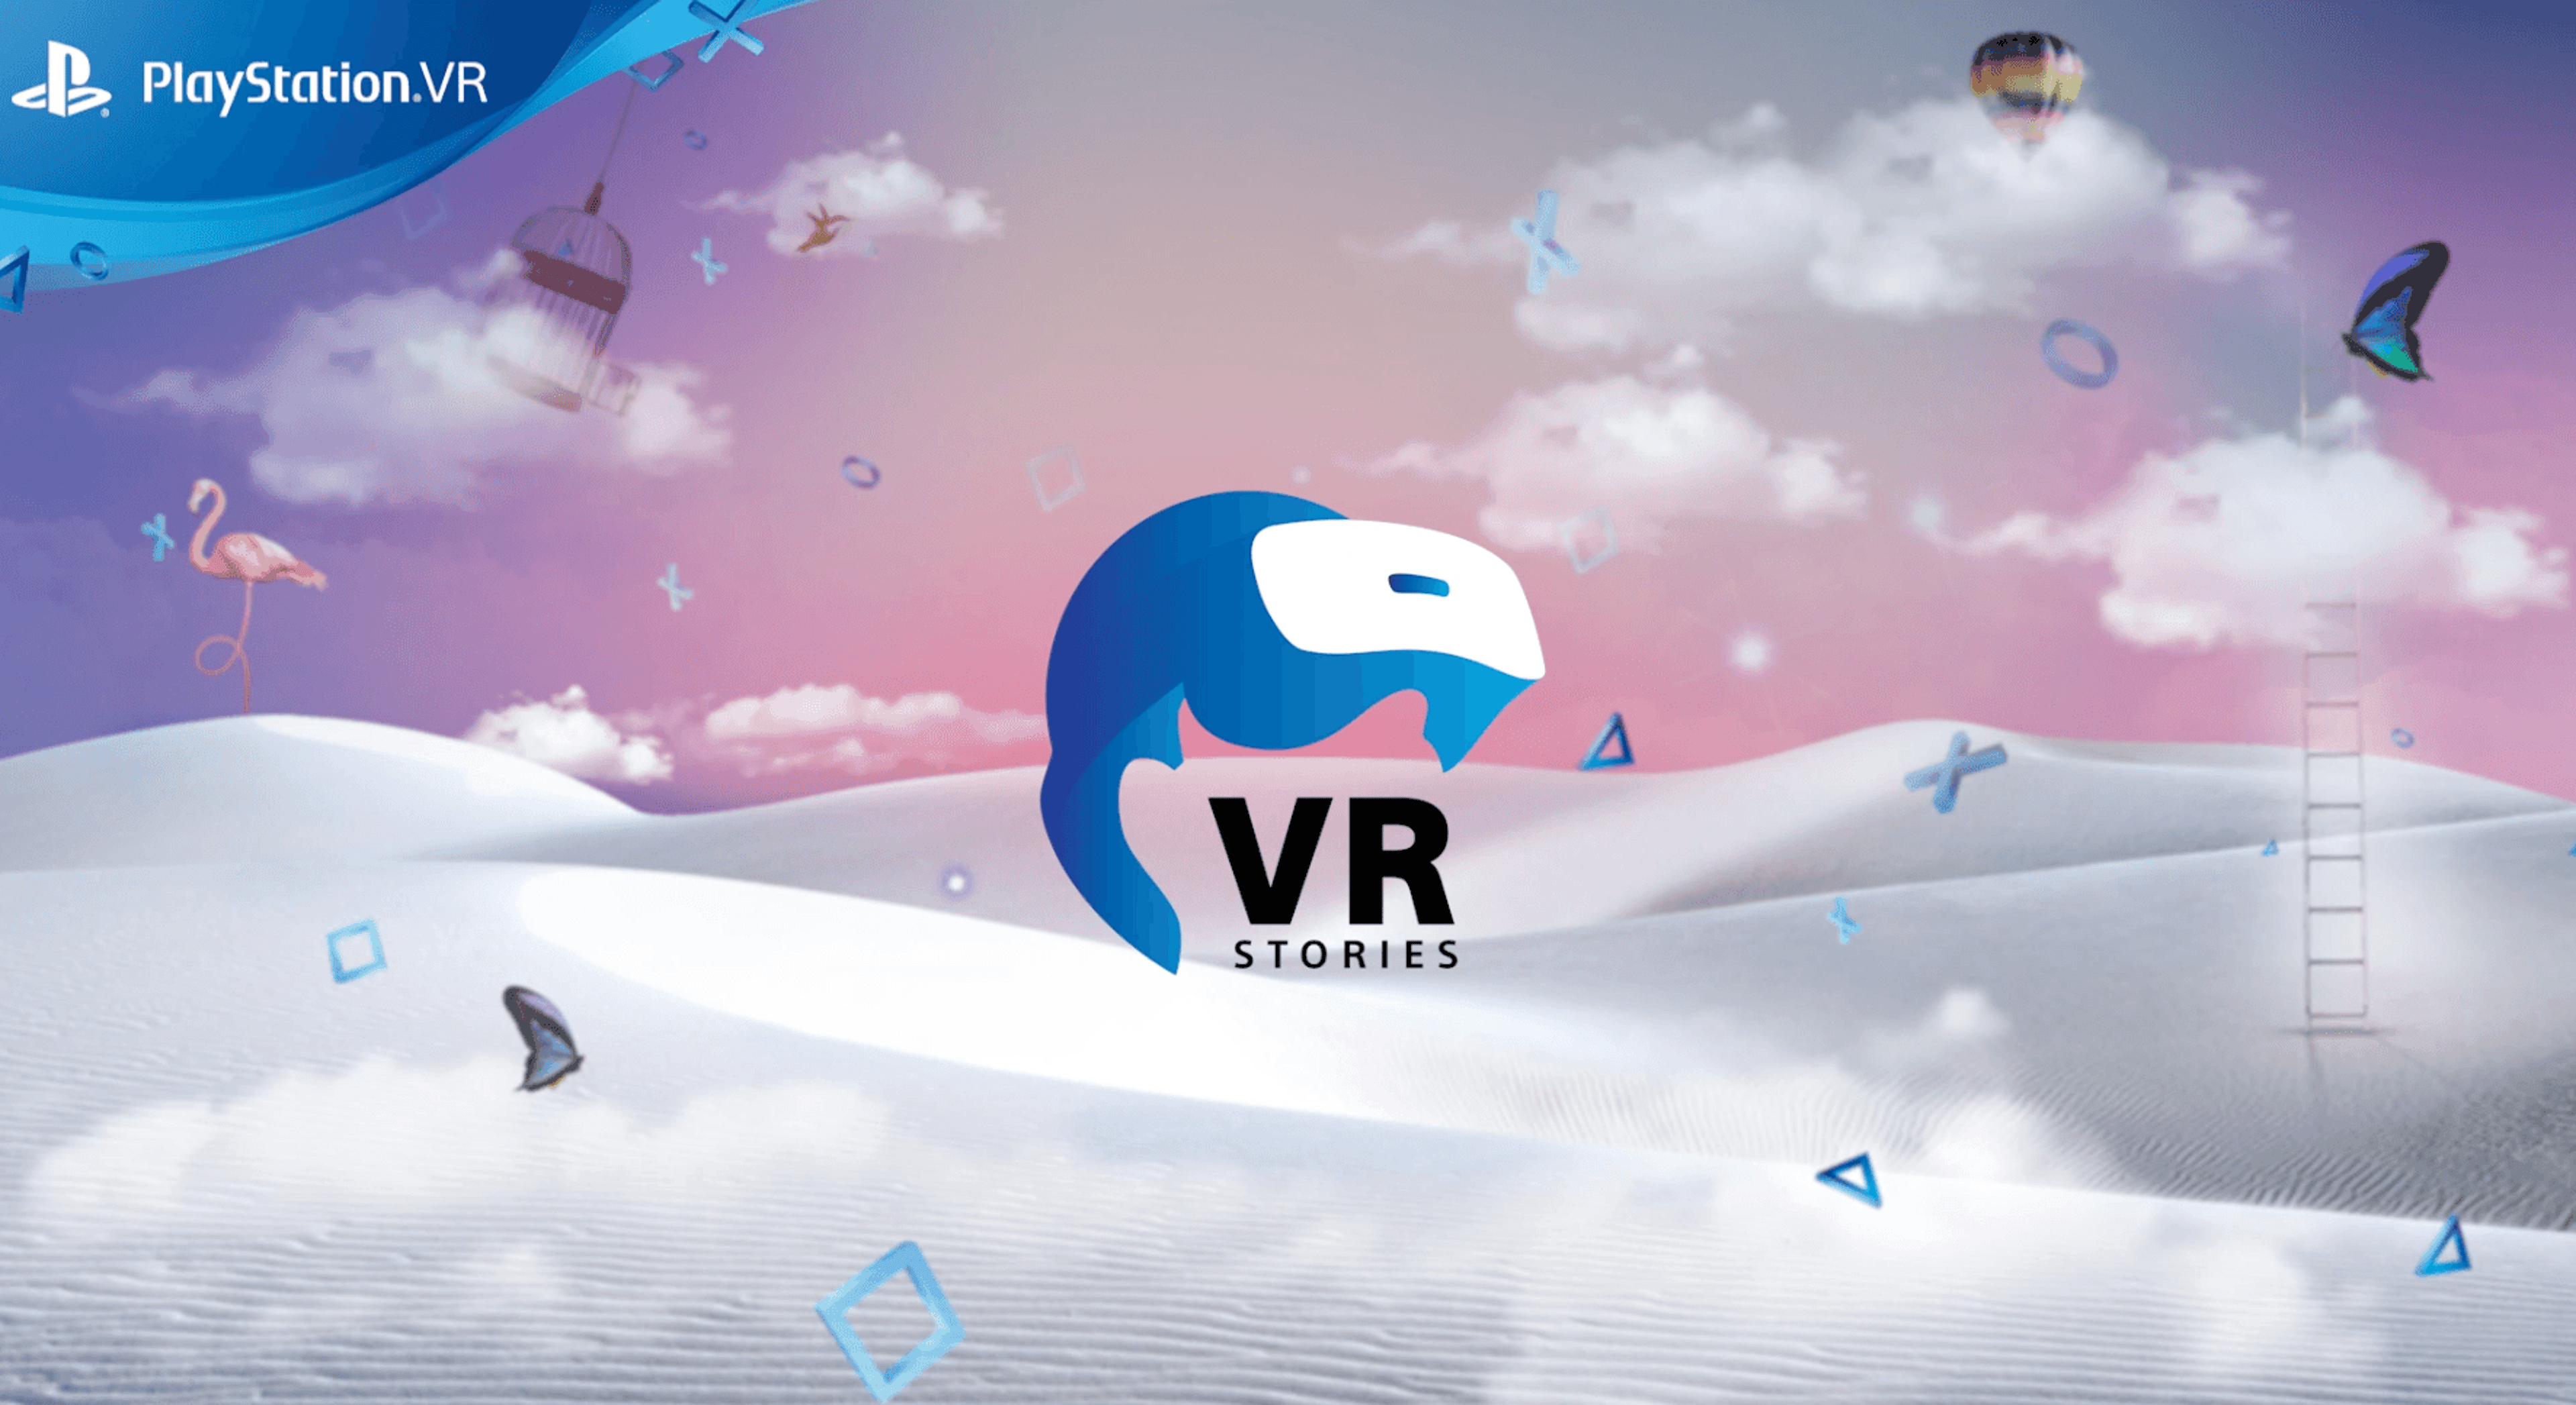 VR Stories: annunciata la sezione gratuita dedicata ai contenuti di intrattenimento per PlayStation VR